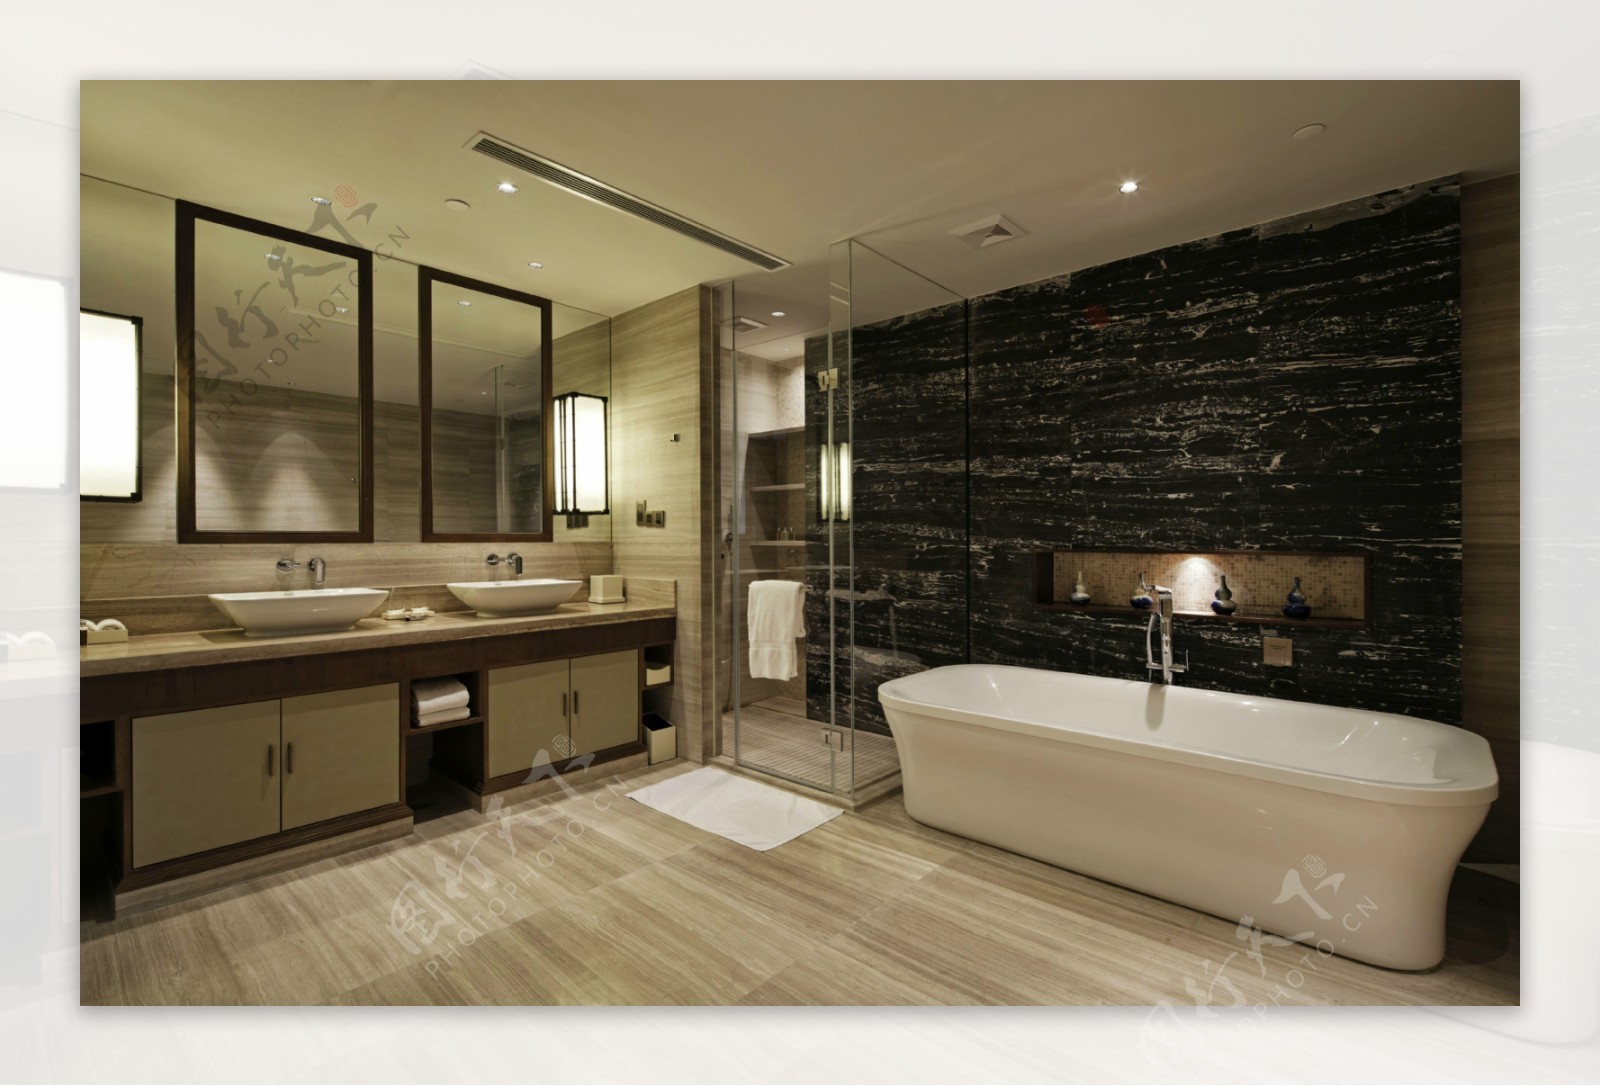 中式时尚室内卫生间浴缸效果图